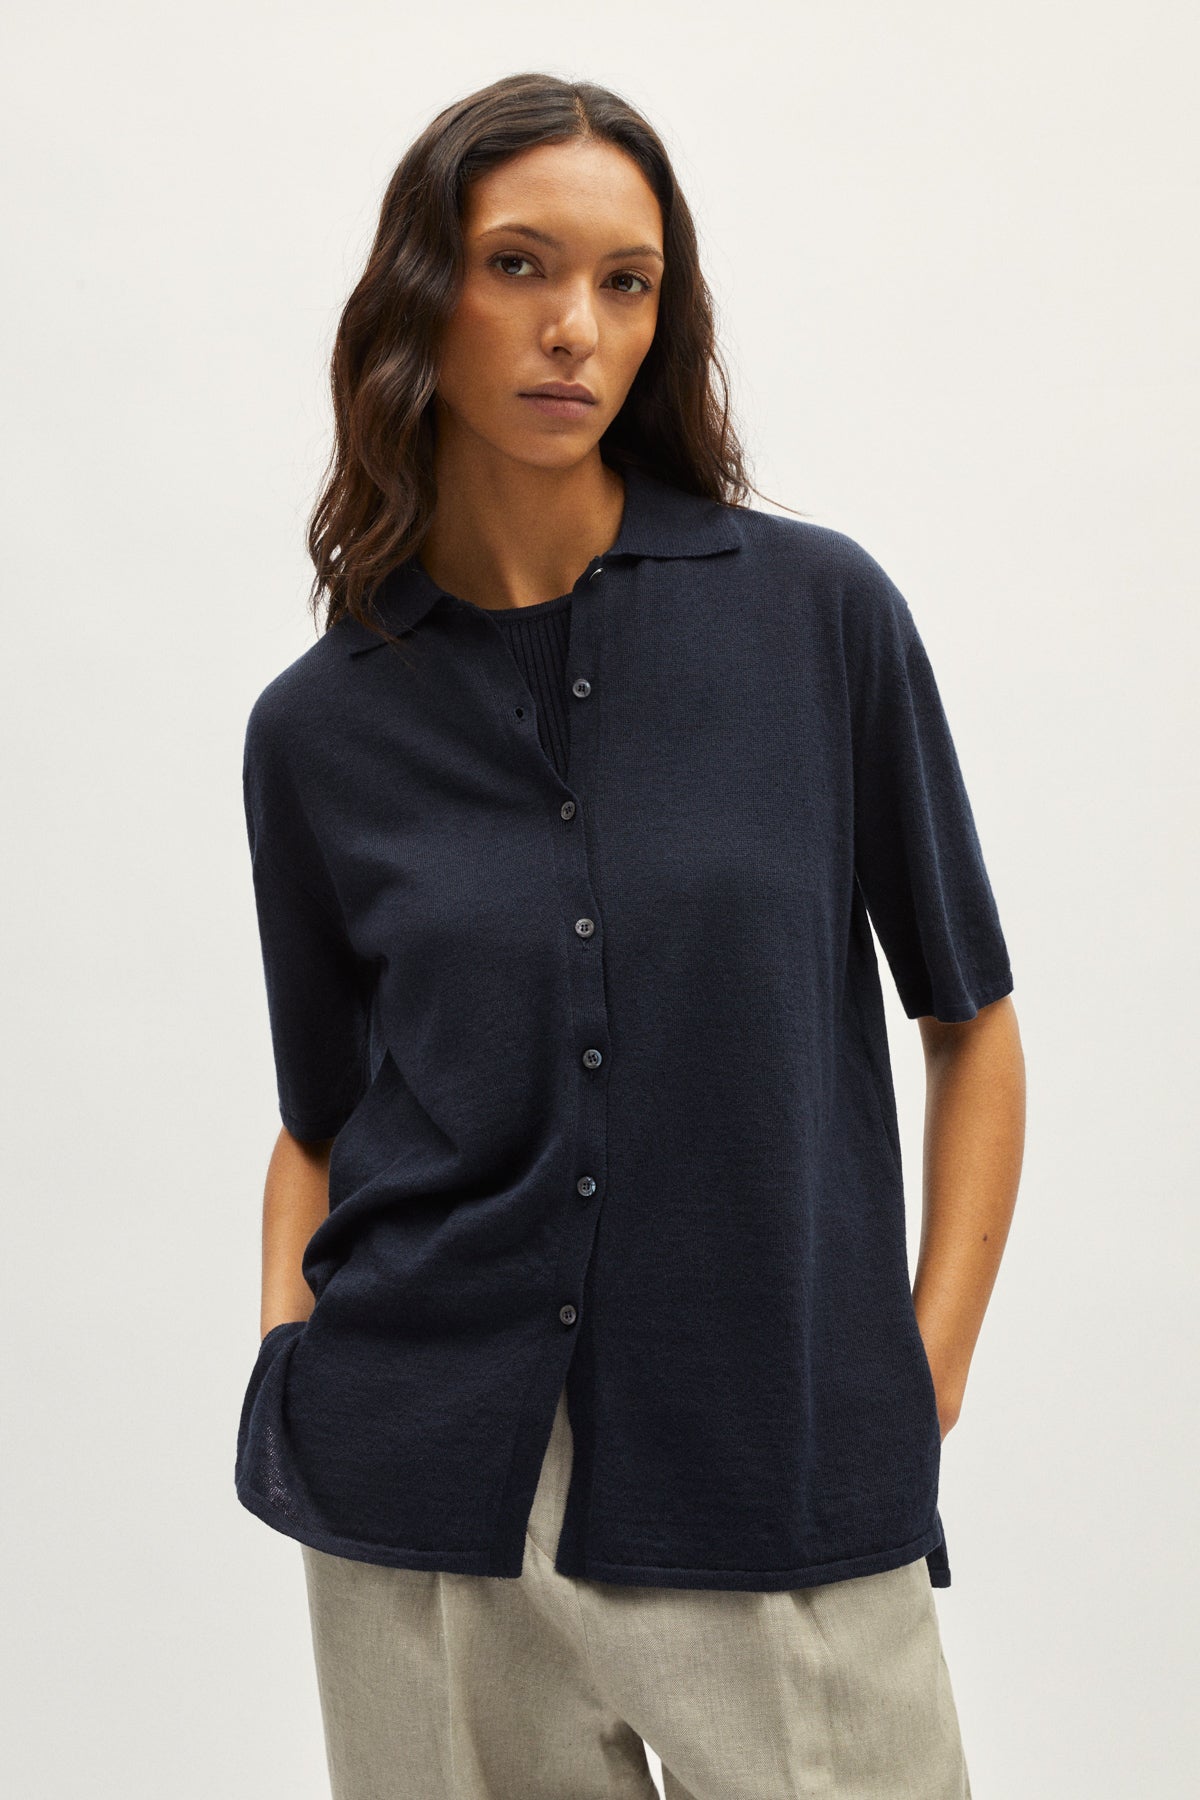 the linen cotton short sleeve relaxed shirt blue navy